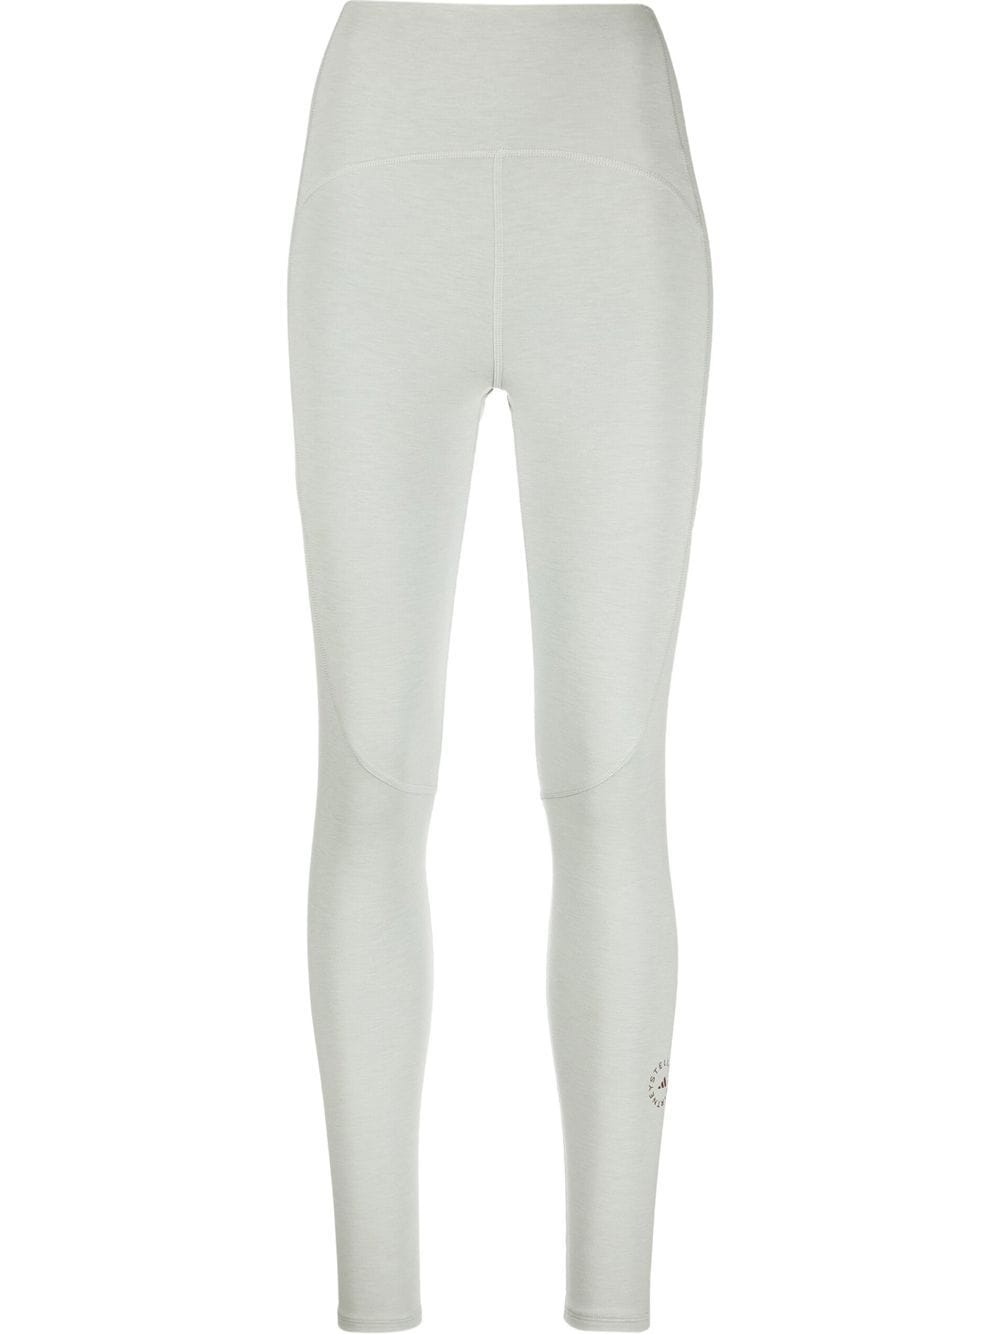 adidas by Stella McCartney 7/8 yoga leggings - Grey